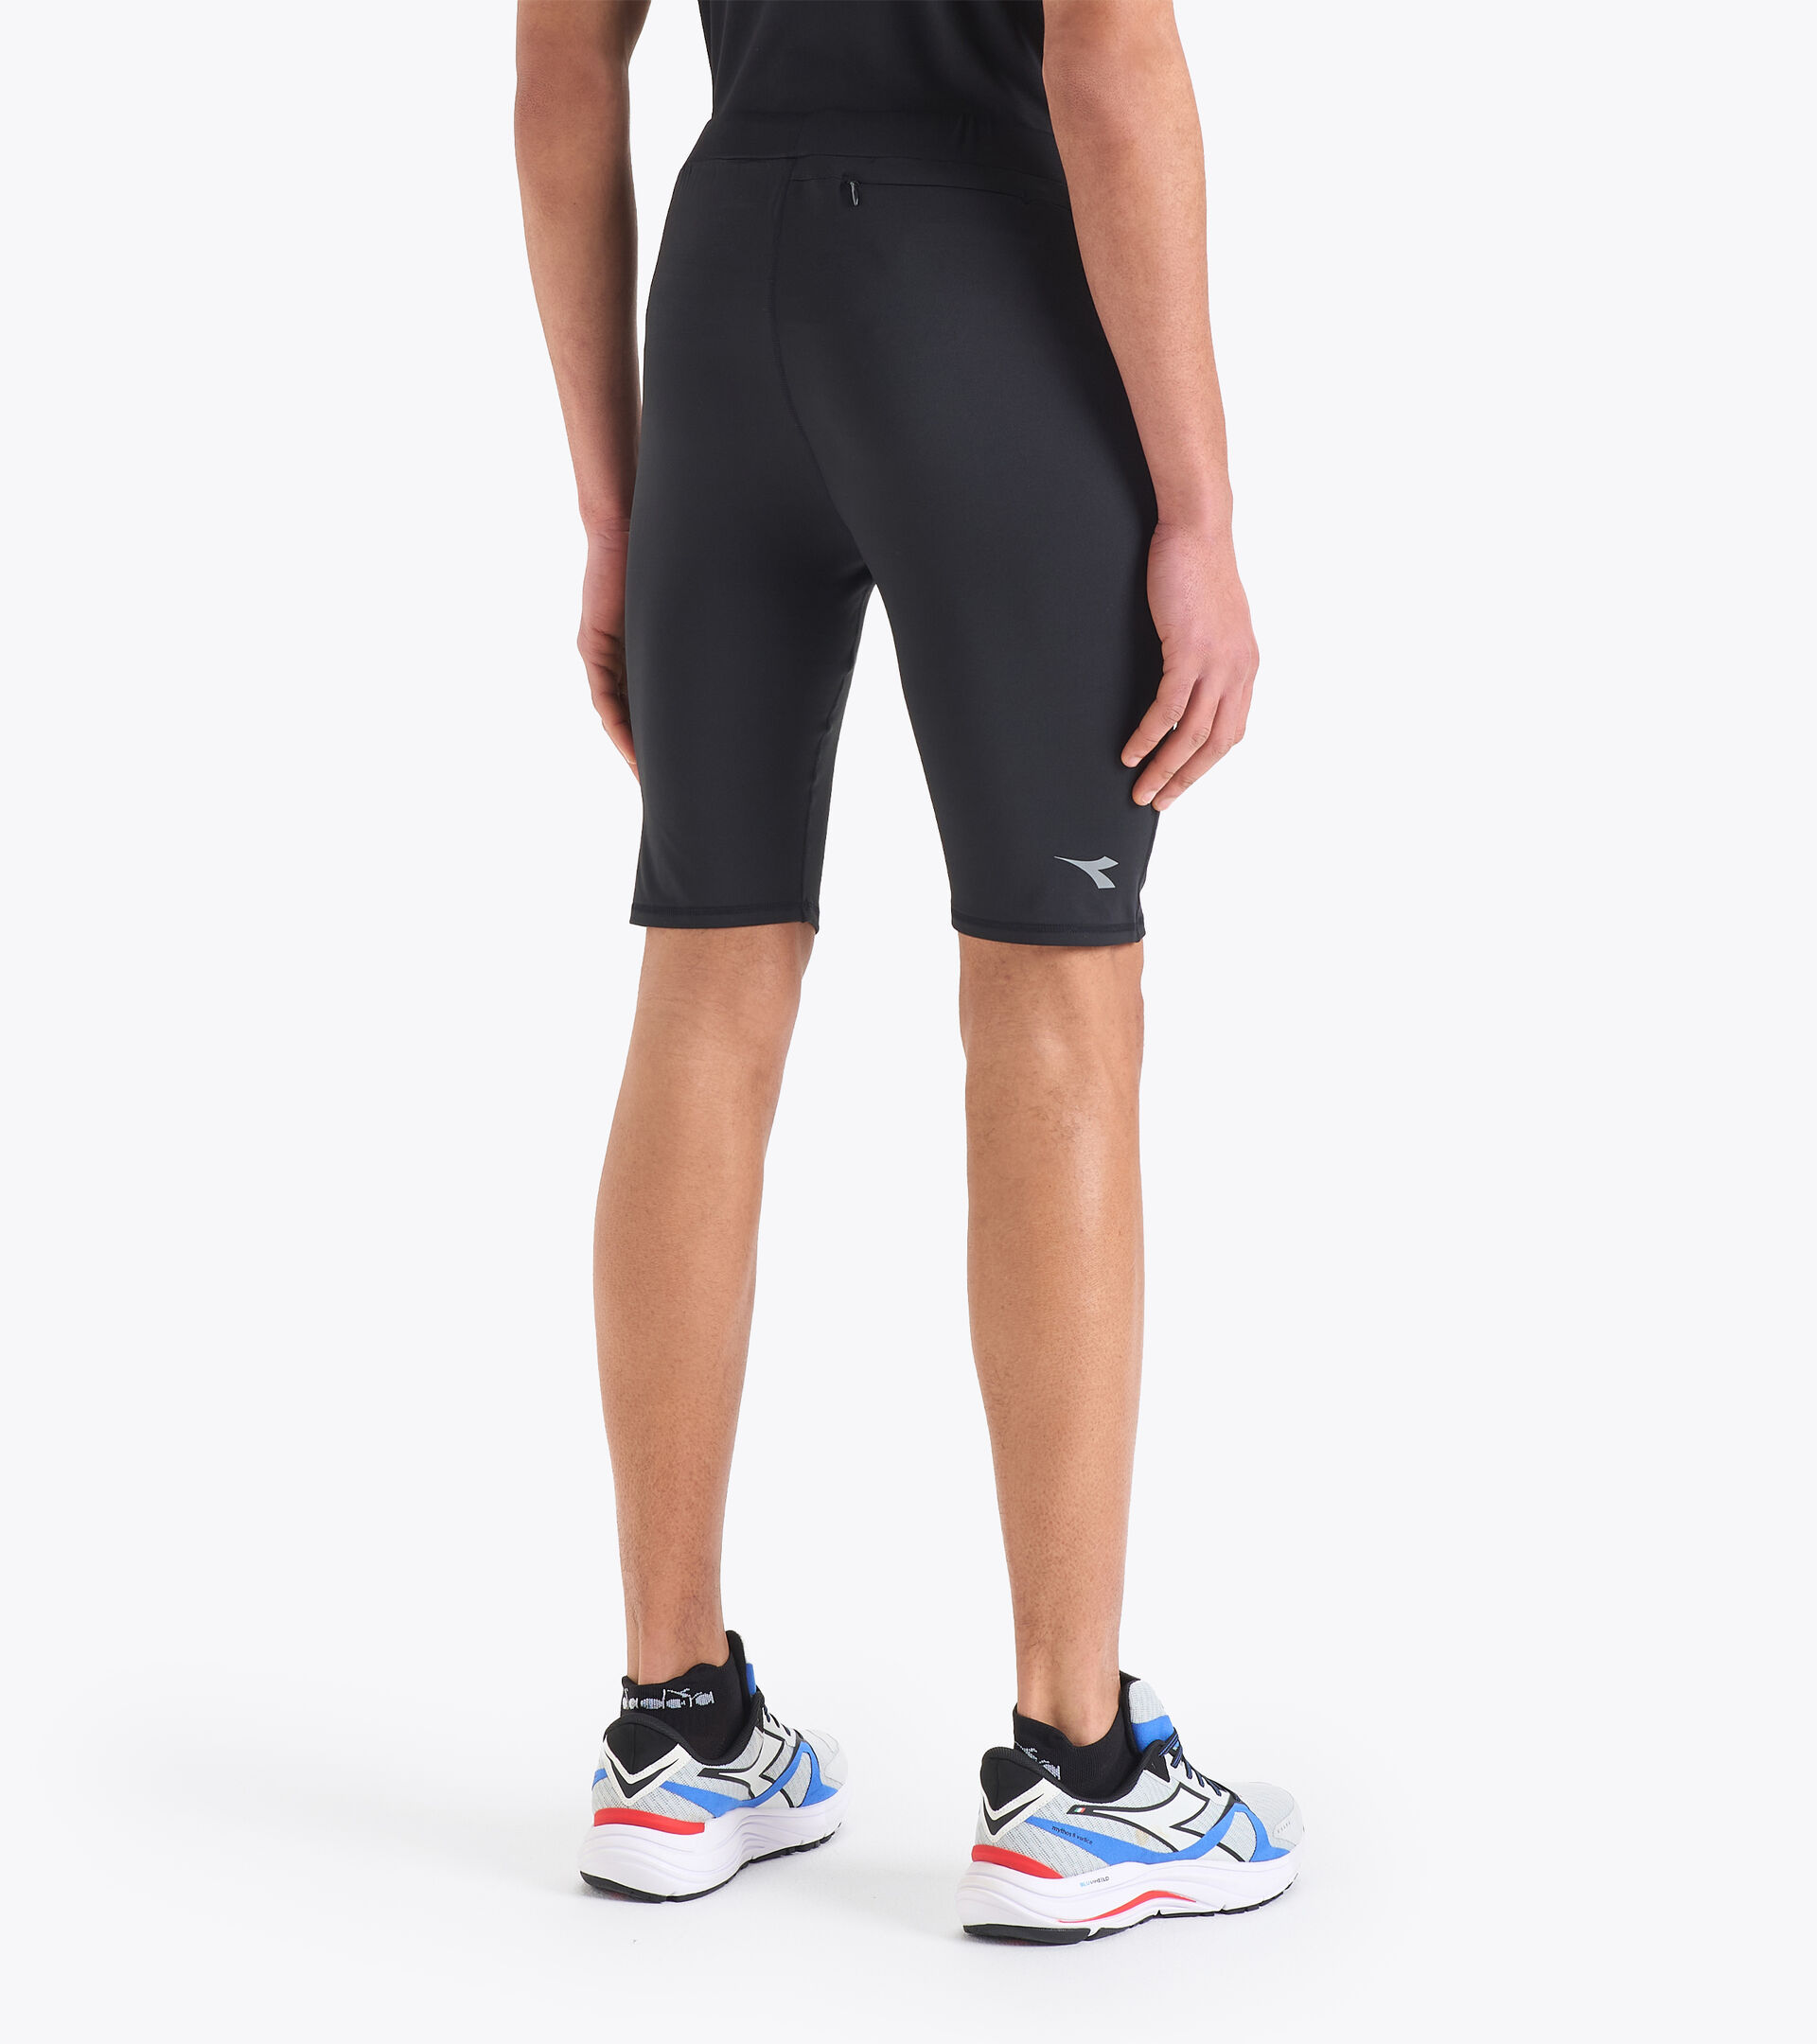 Pantalones cortos para correr - Diadora Tienda Online